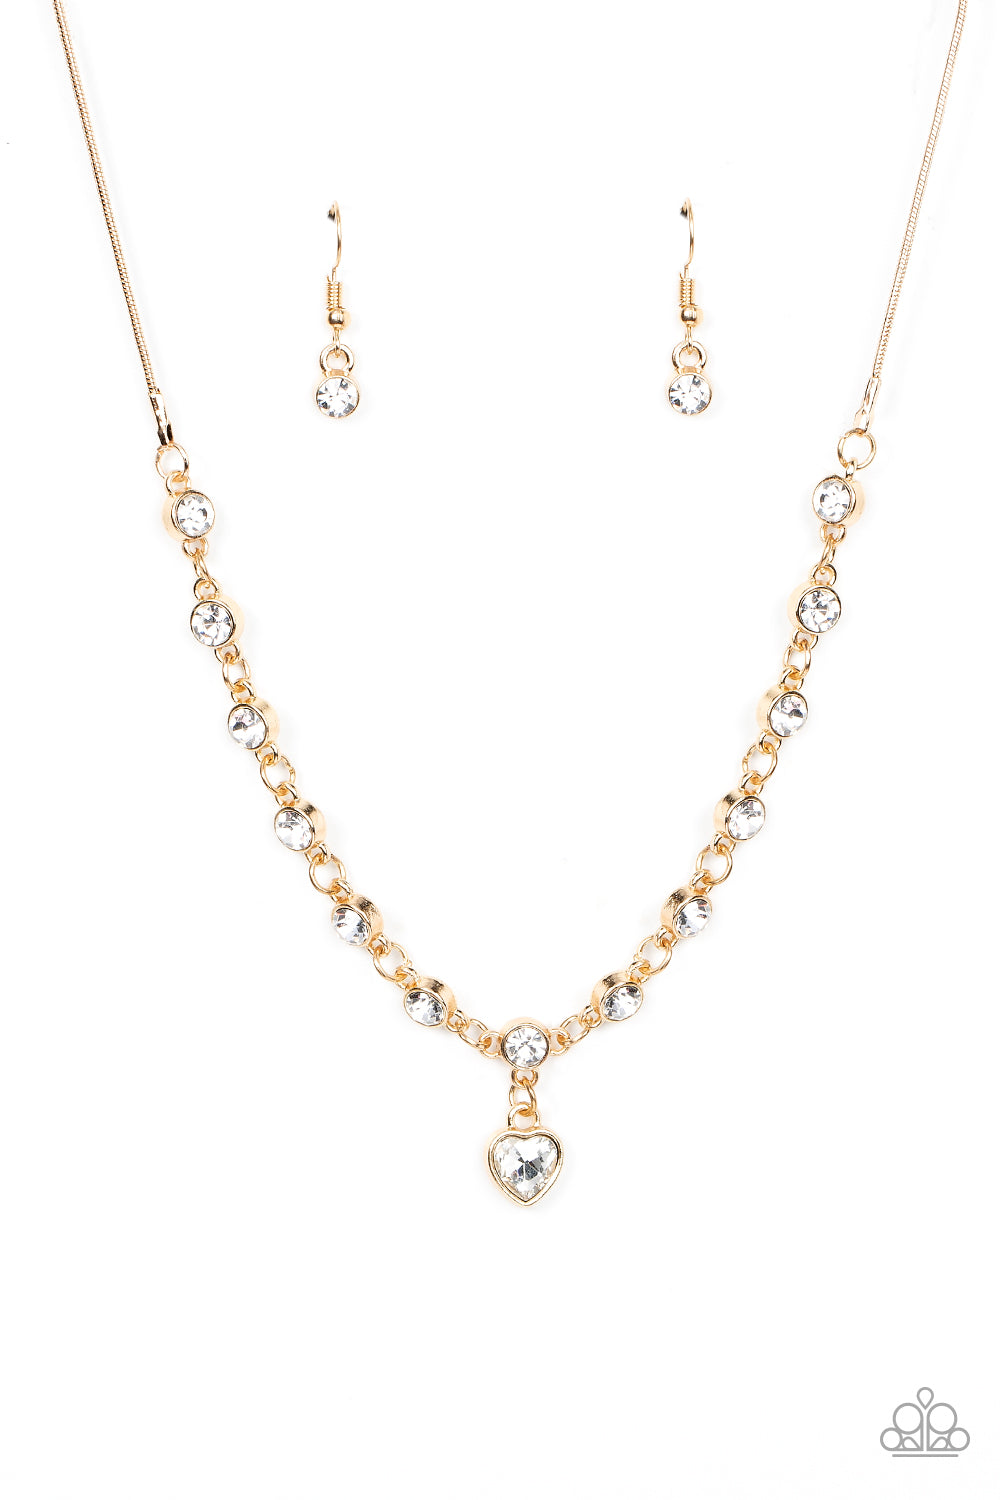 True Love Trinket Necklace (White, Pink, Gold)